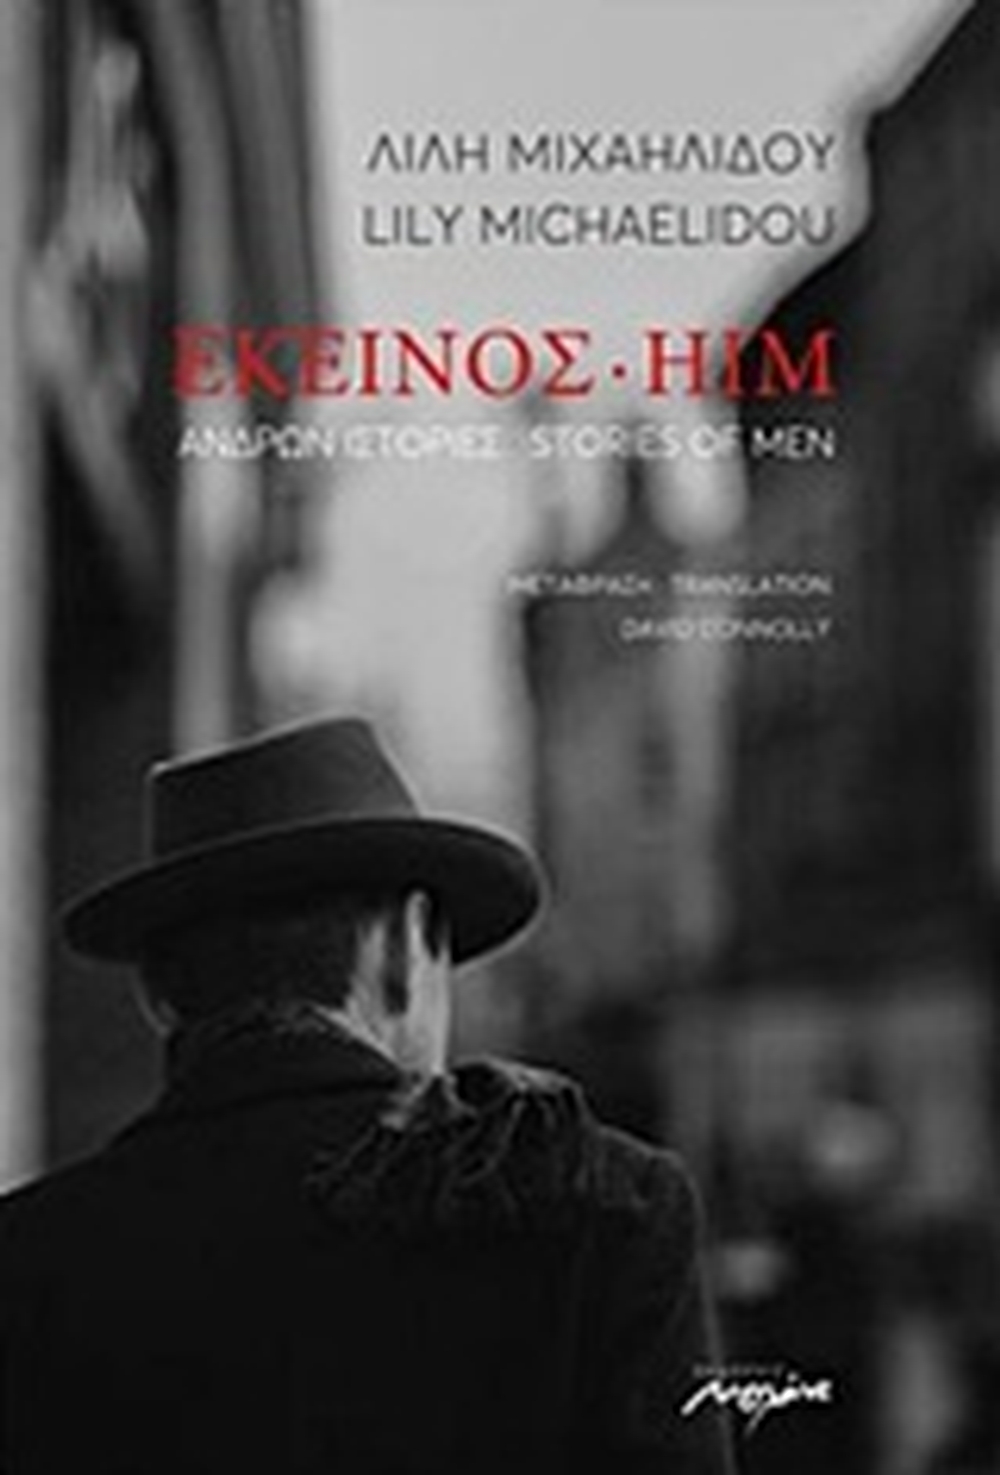 Εκείνος, ανδρών ιστορίες/ Him, stories of men